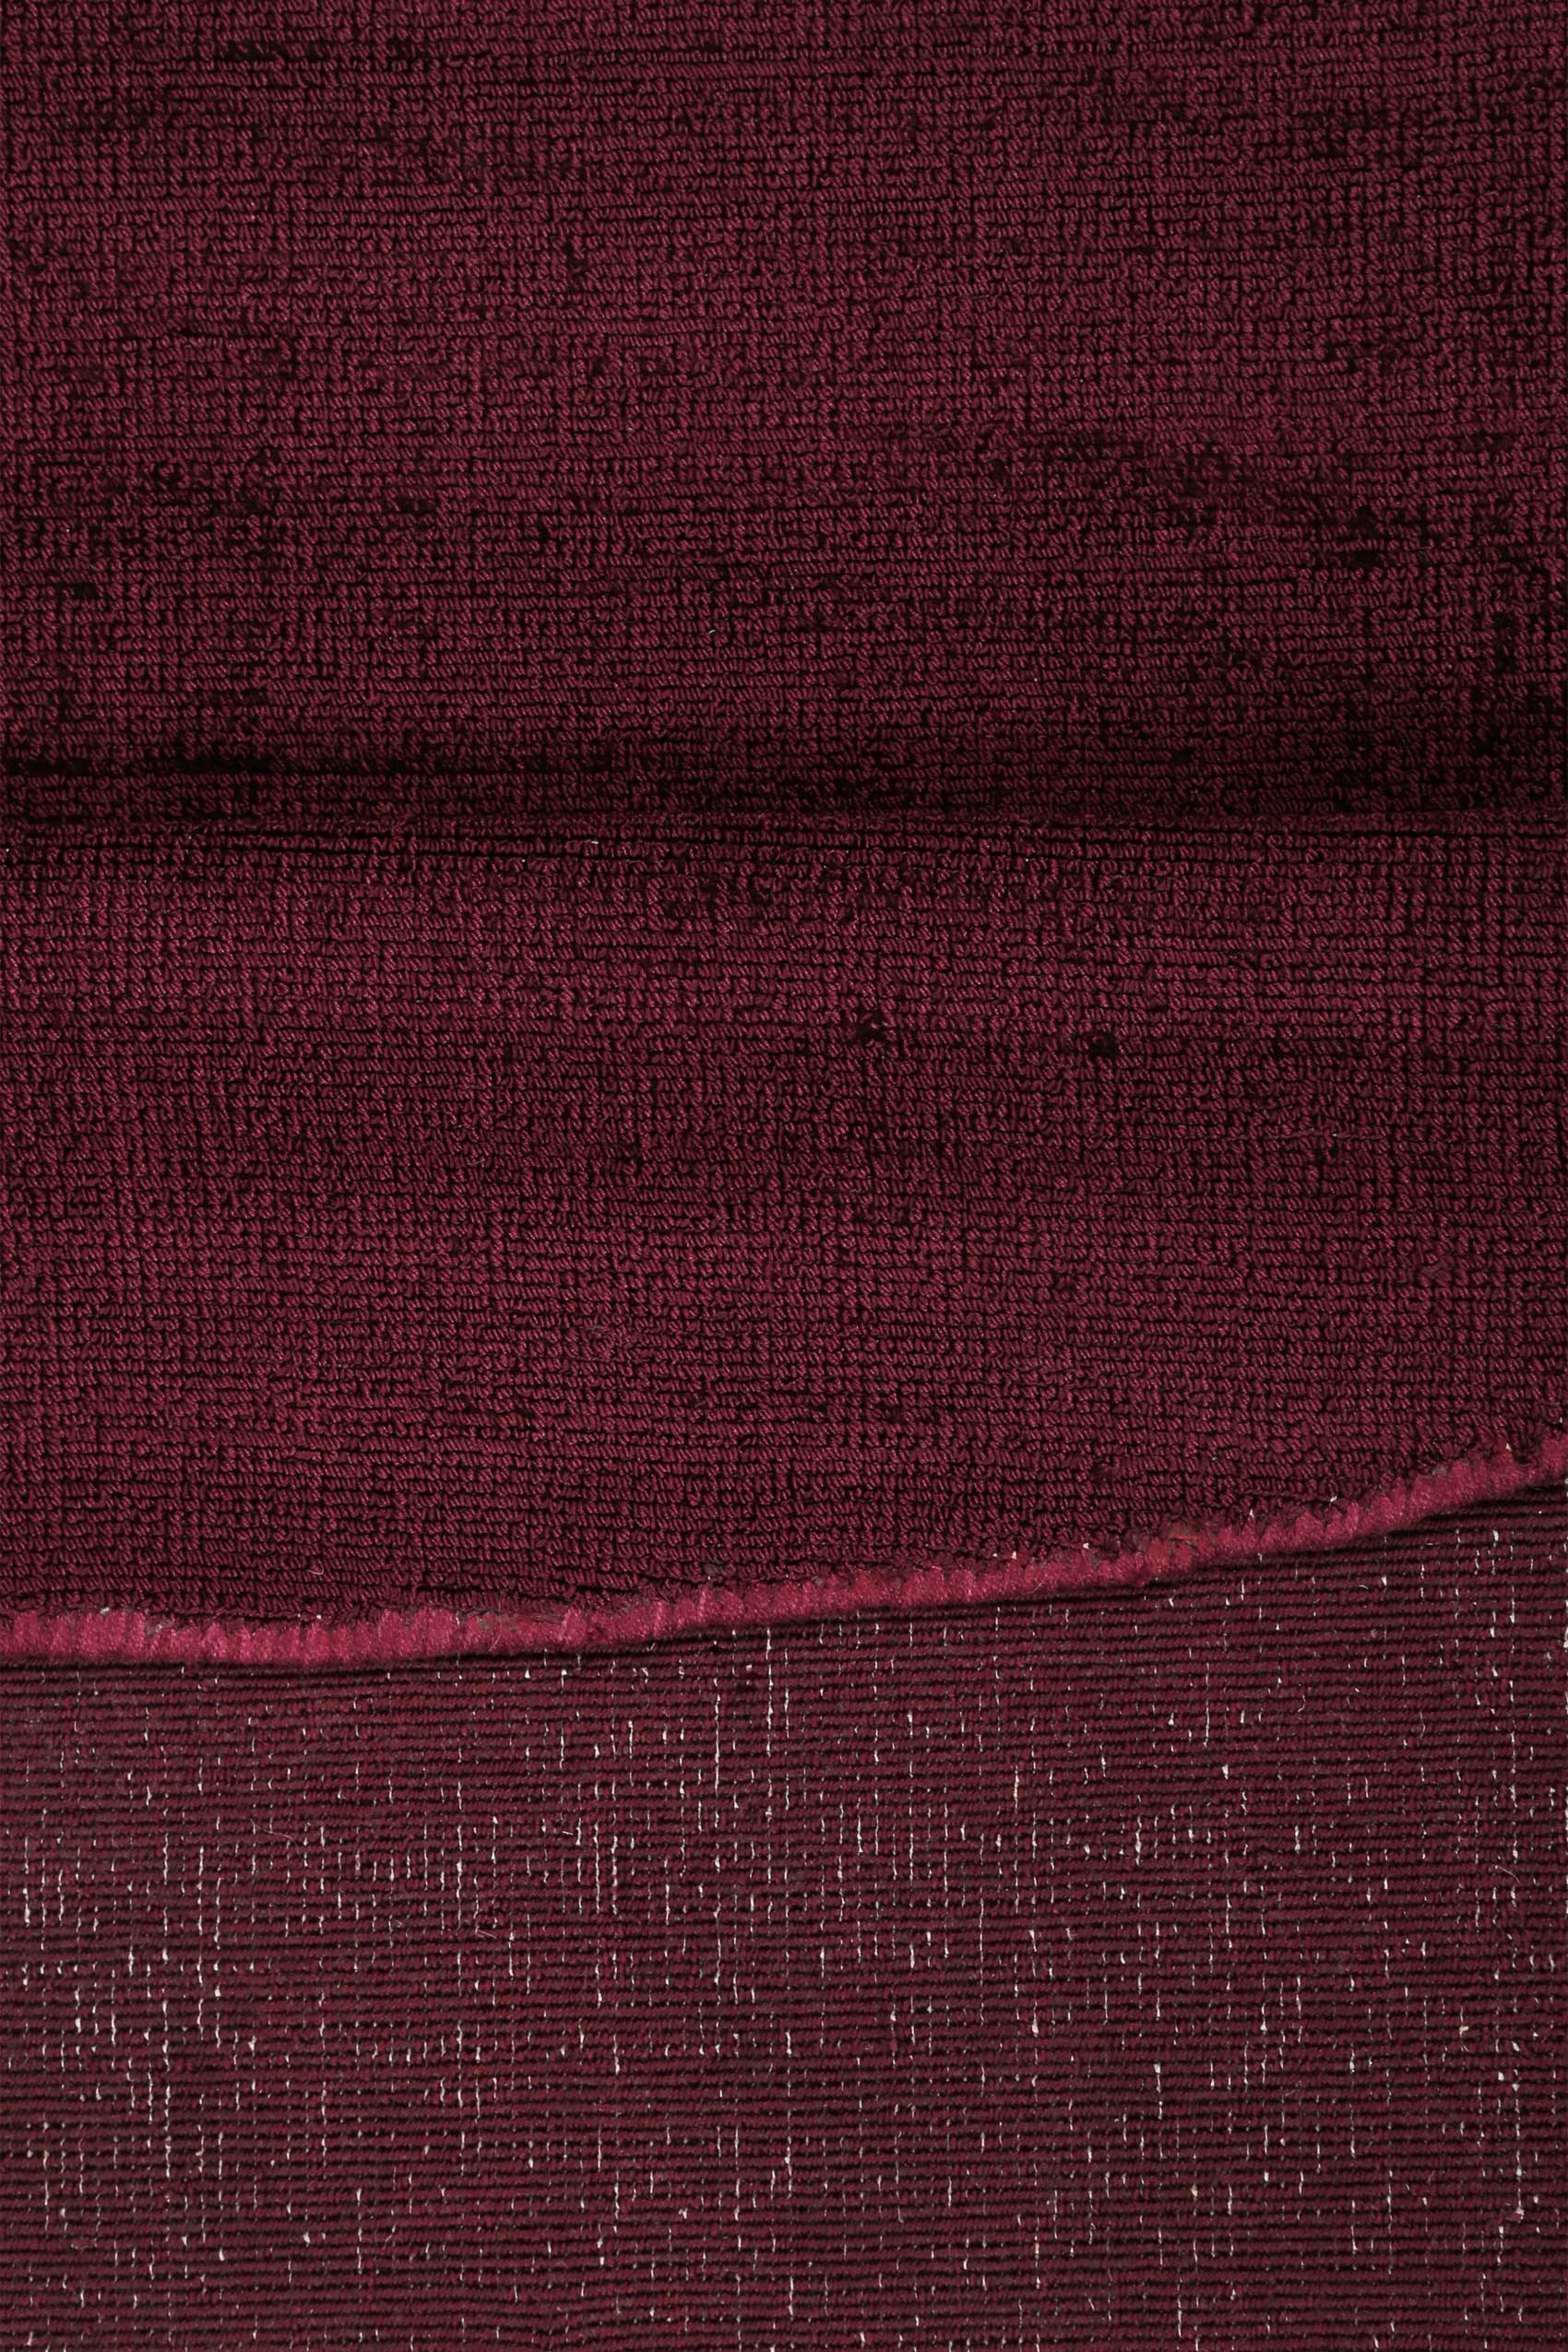 Esprit Kurzflor Teppich Rund Bordeaux Rot » Gil « - Ansicht 3